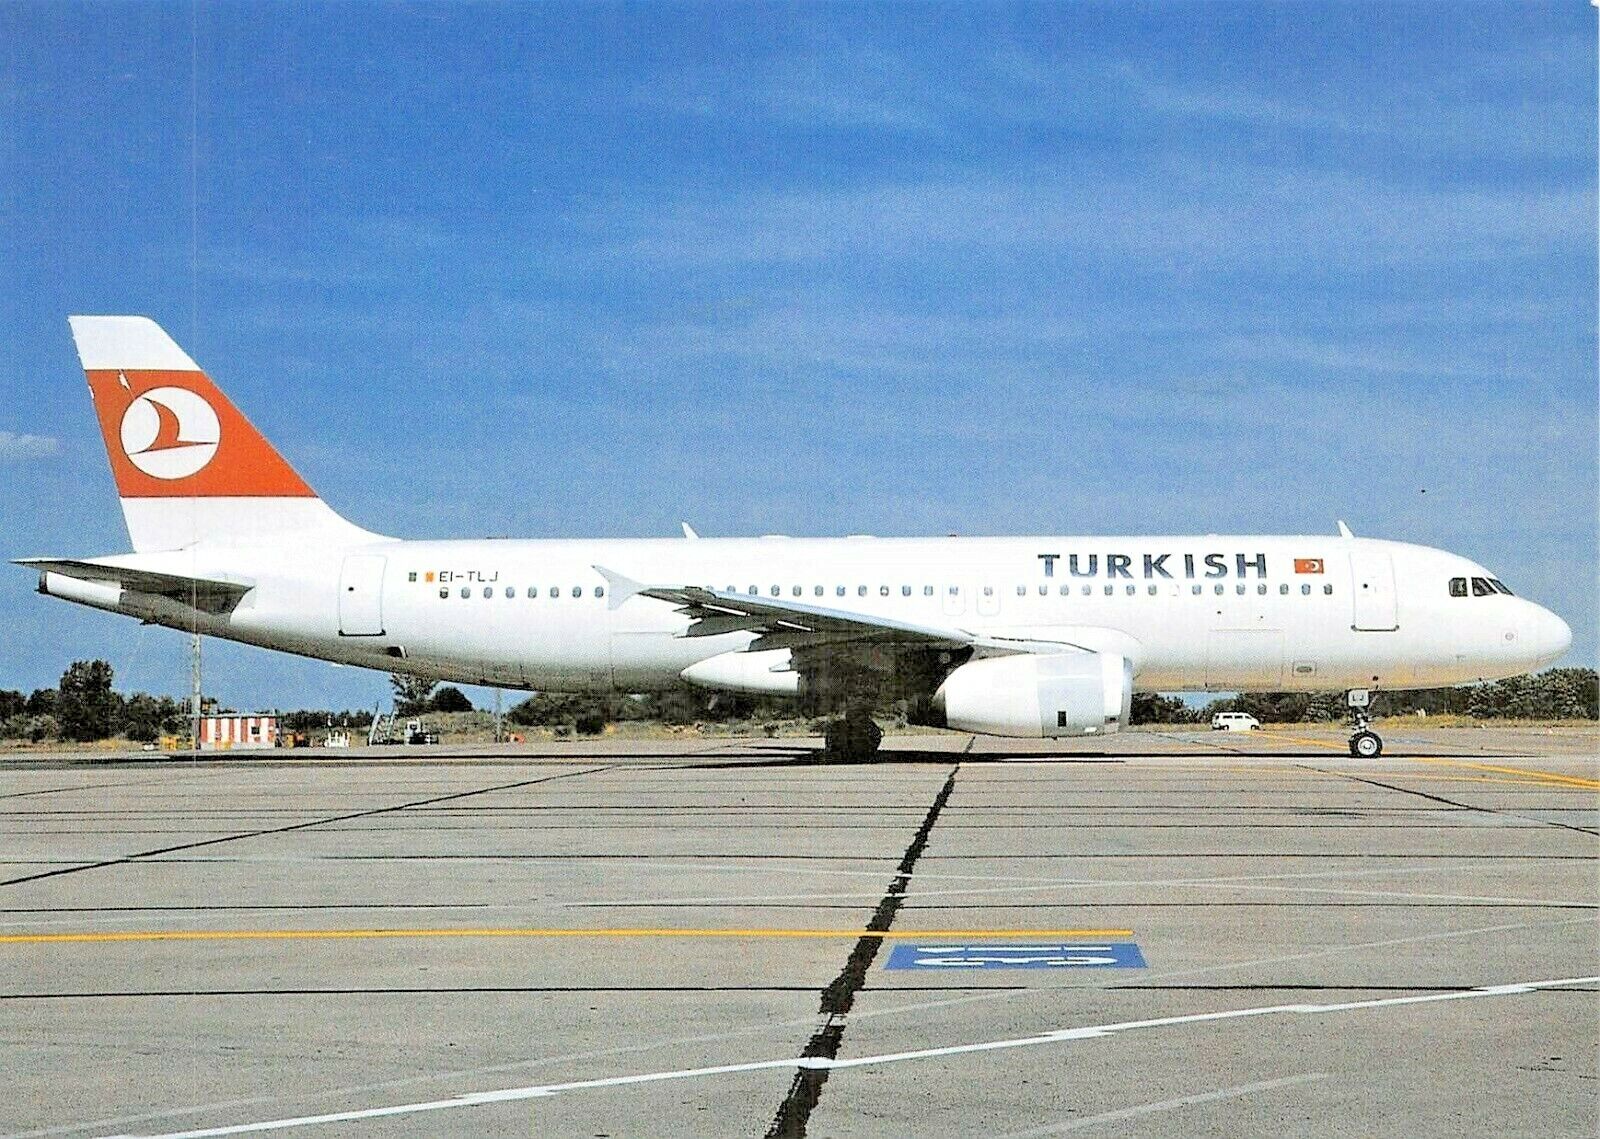 TURKISH AIRBUS A320-231 El-TLJ c/n 0257  Airplane Postcard